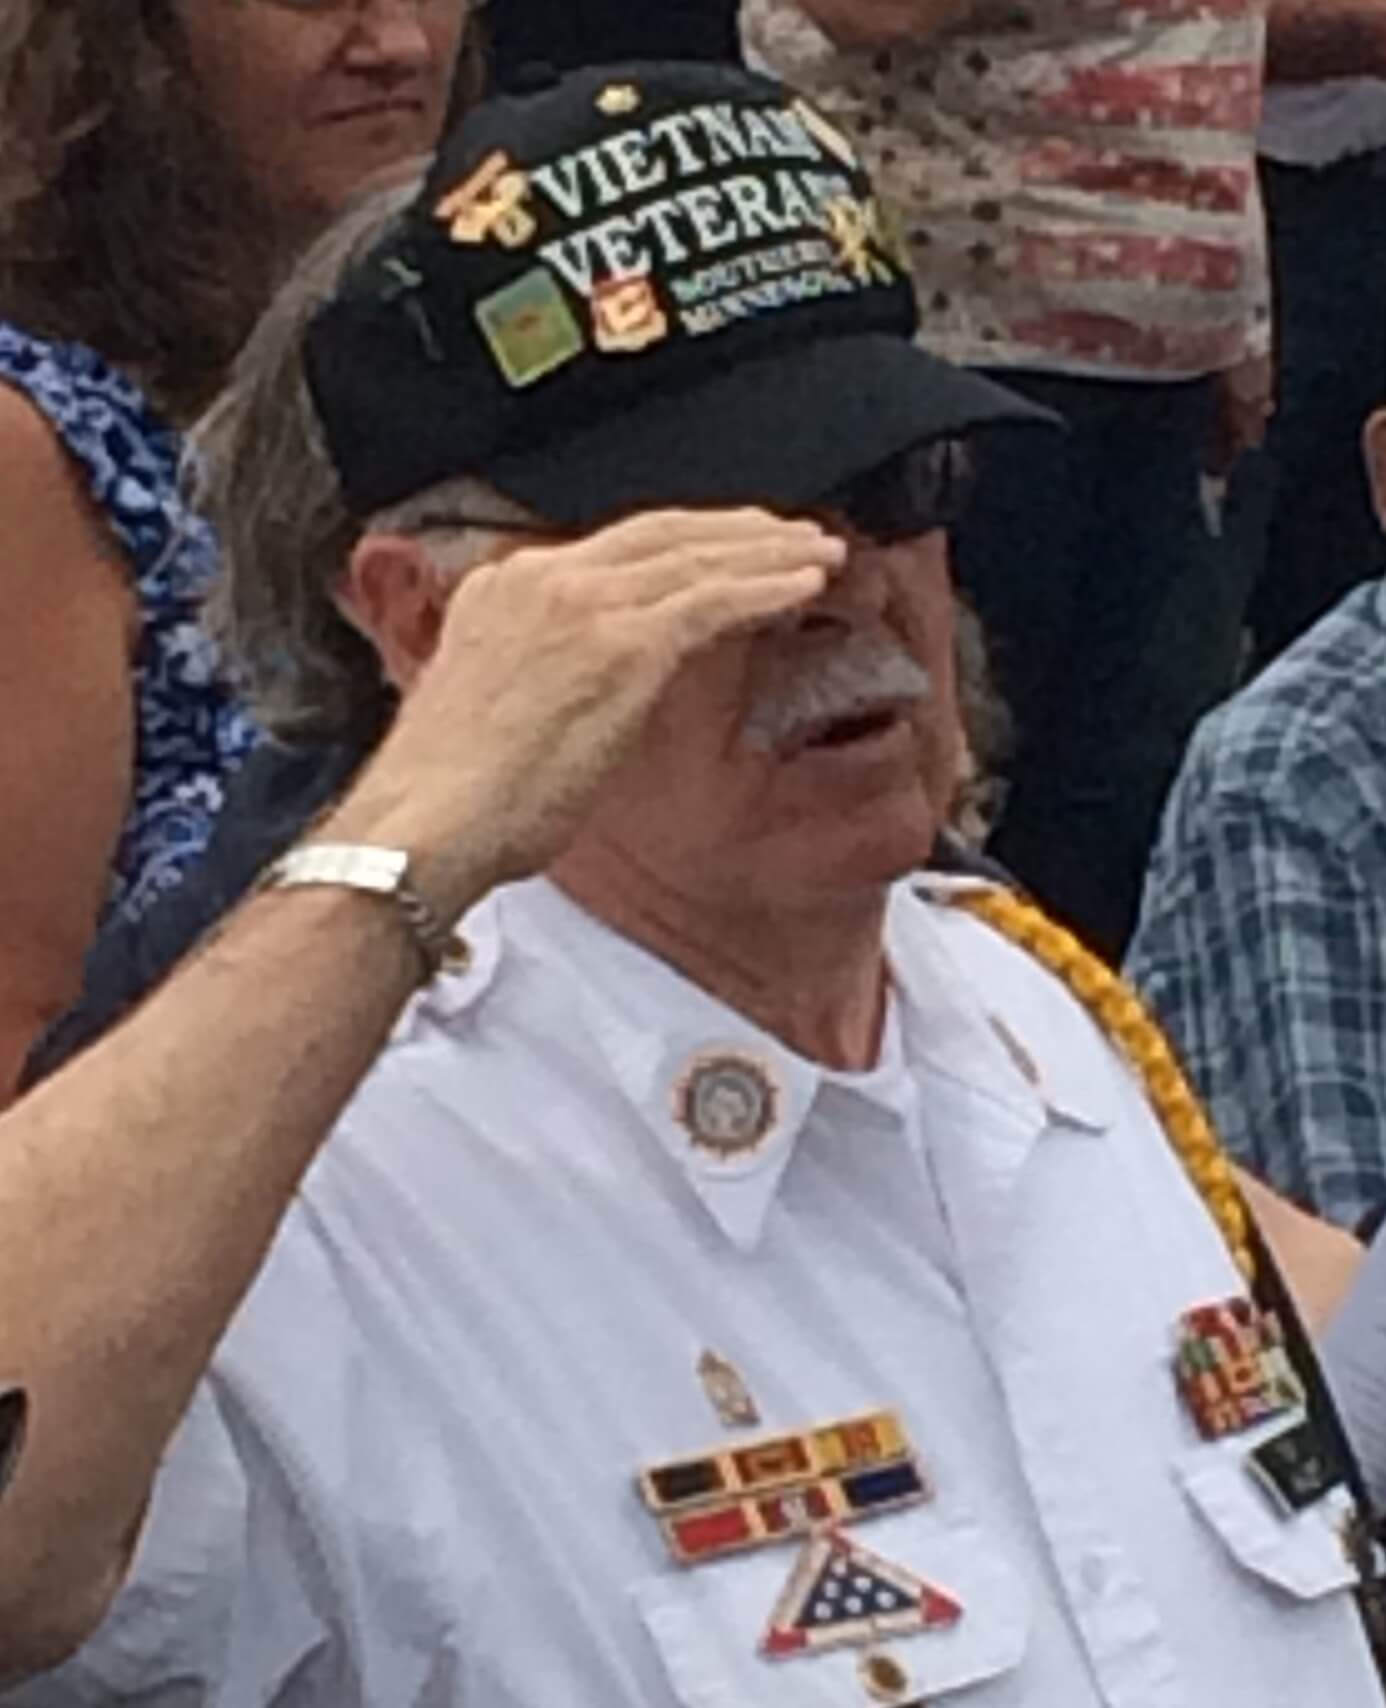 Vietnam veteran in a hat saluting.